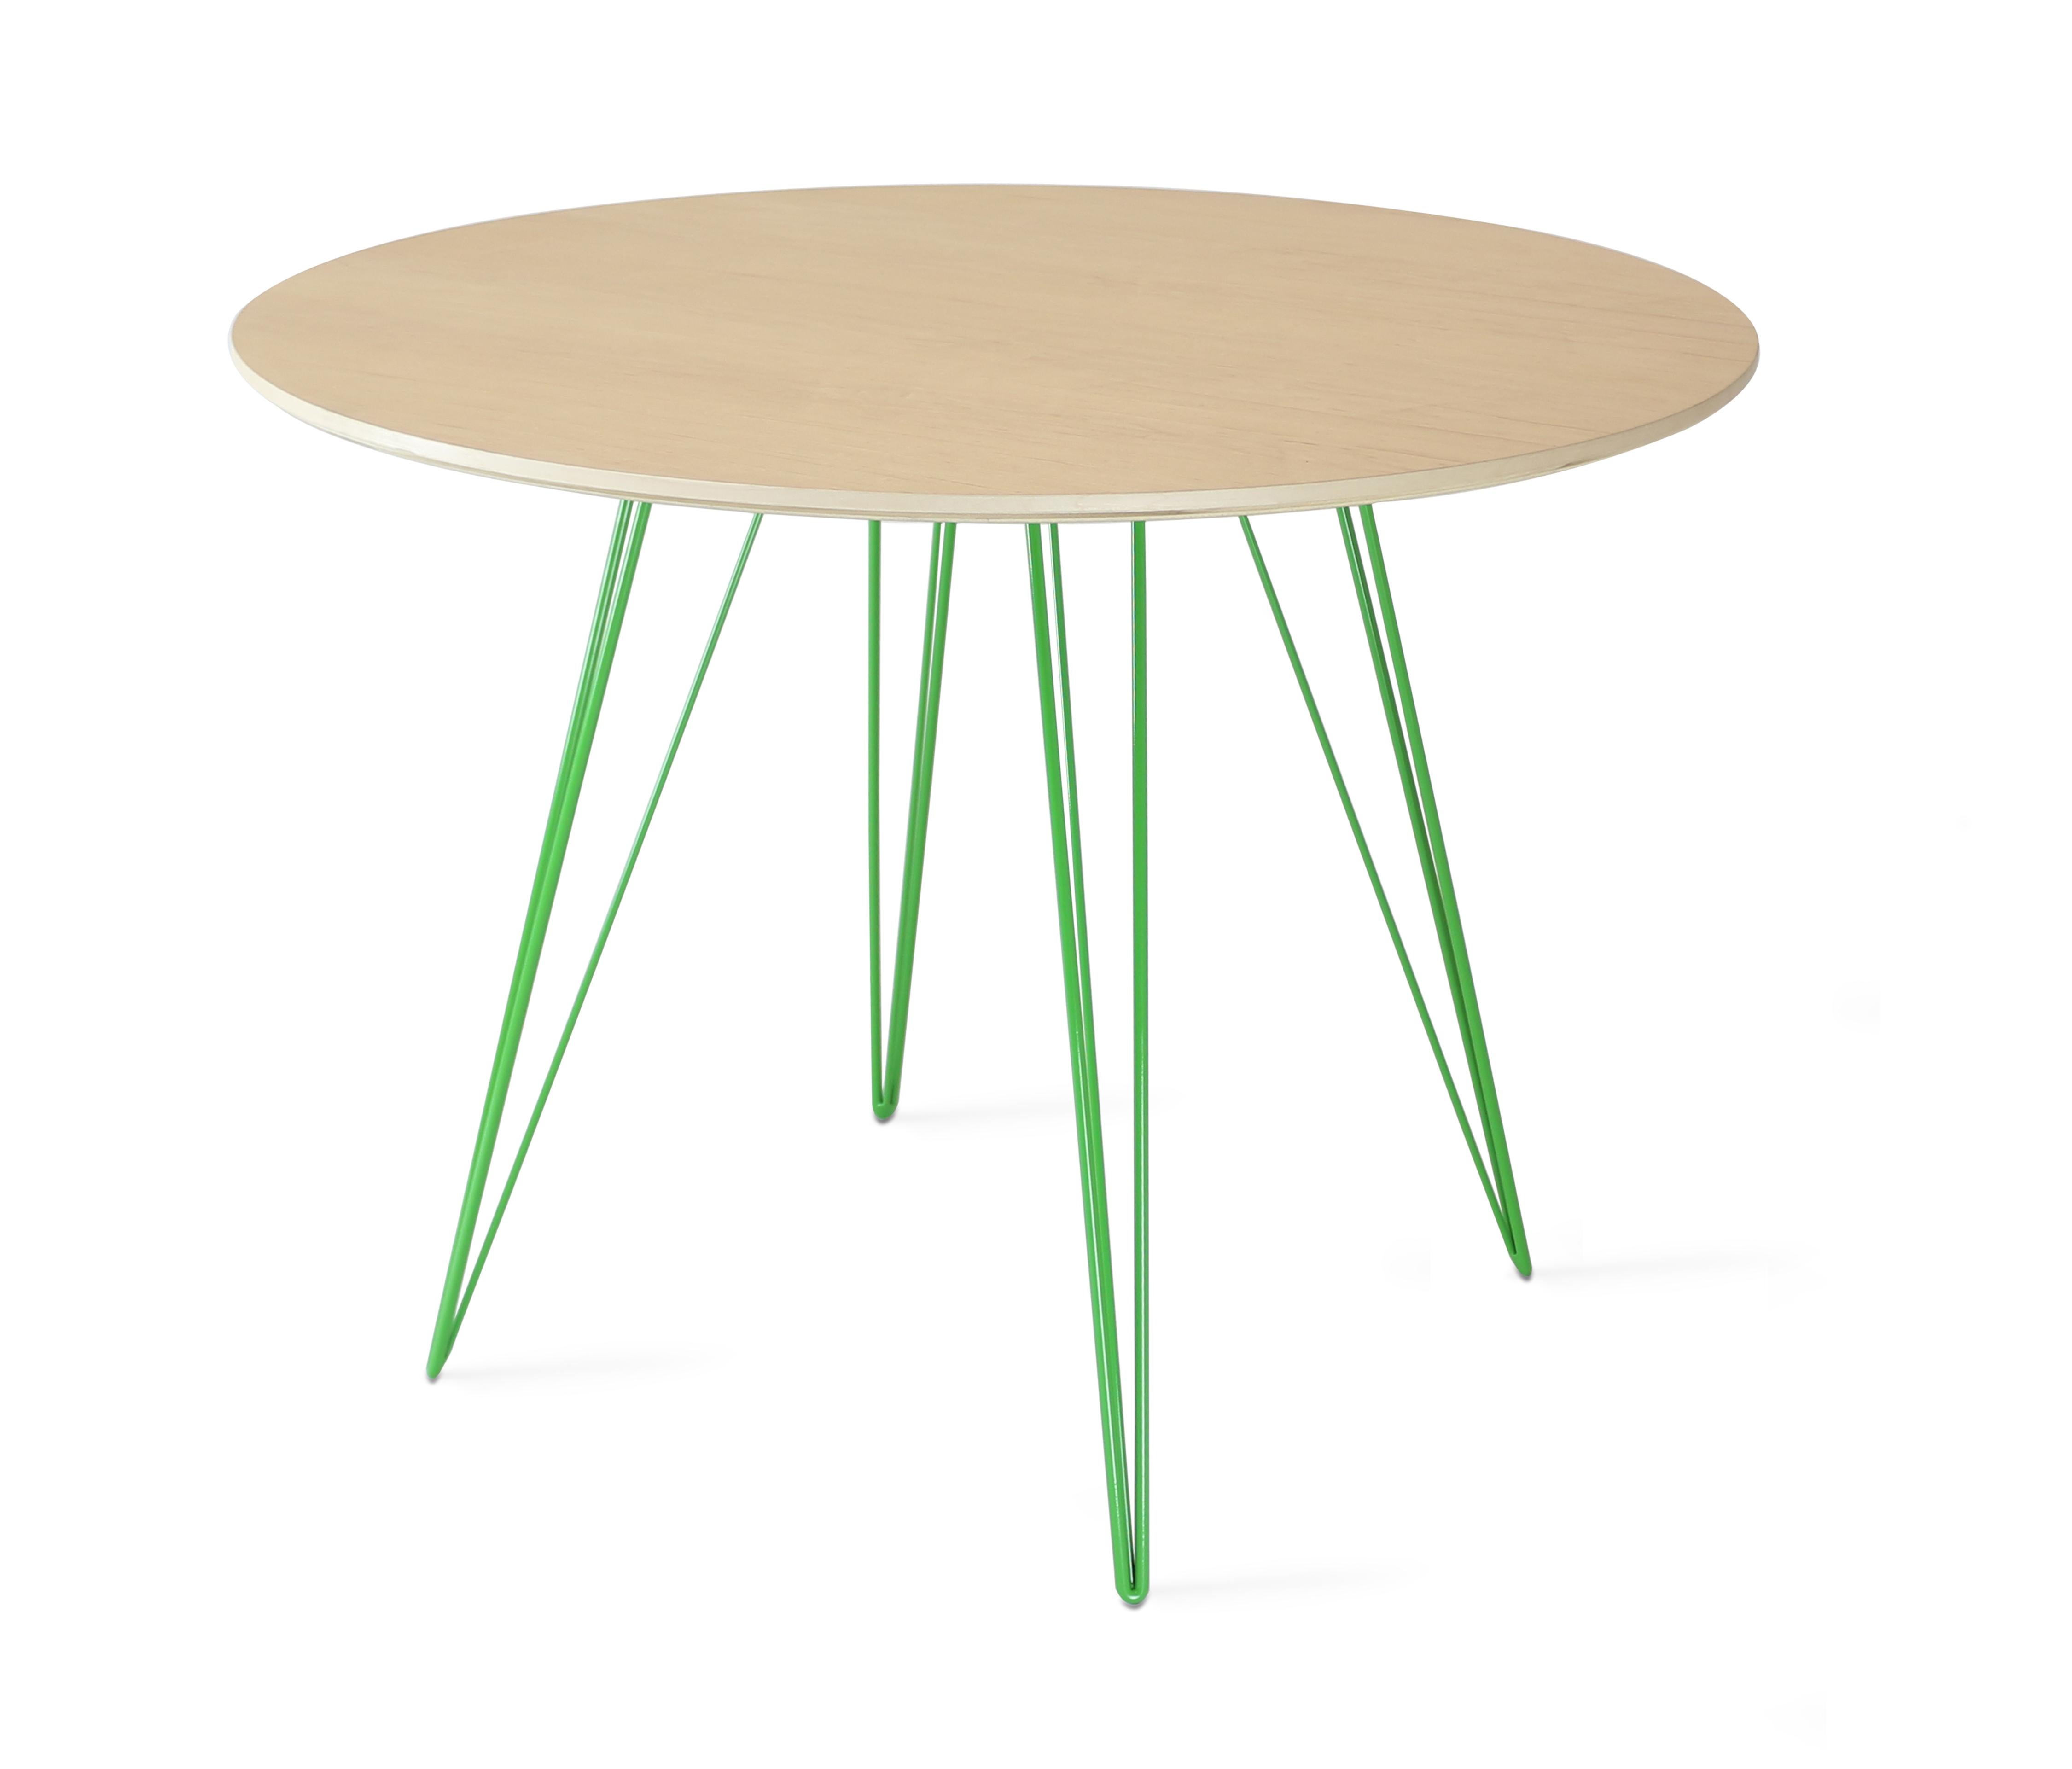 Ein schlanker, eleganter und leichter Tisch, der in Form, Größe und Farbe individuell gestaltet werden kann. Dieses handgefertigte Möbelstück kombiniert perfekt industrielle Haarnadelbeine mit einer abgeschrägten Holzplatte. Die unregelmäßige